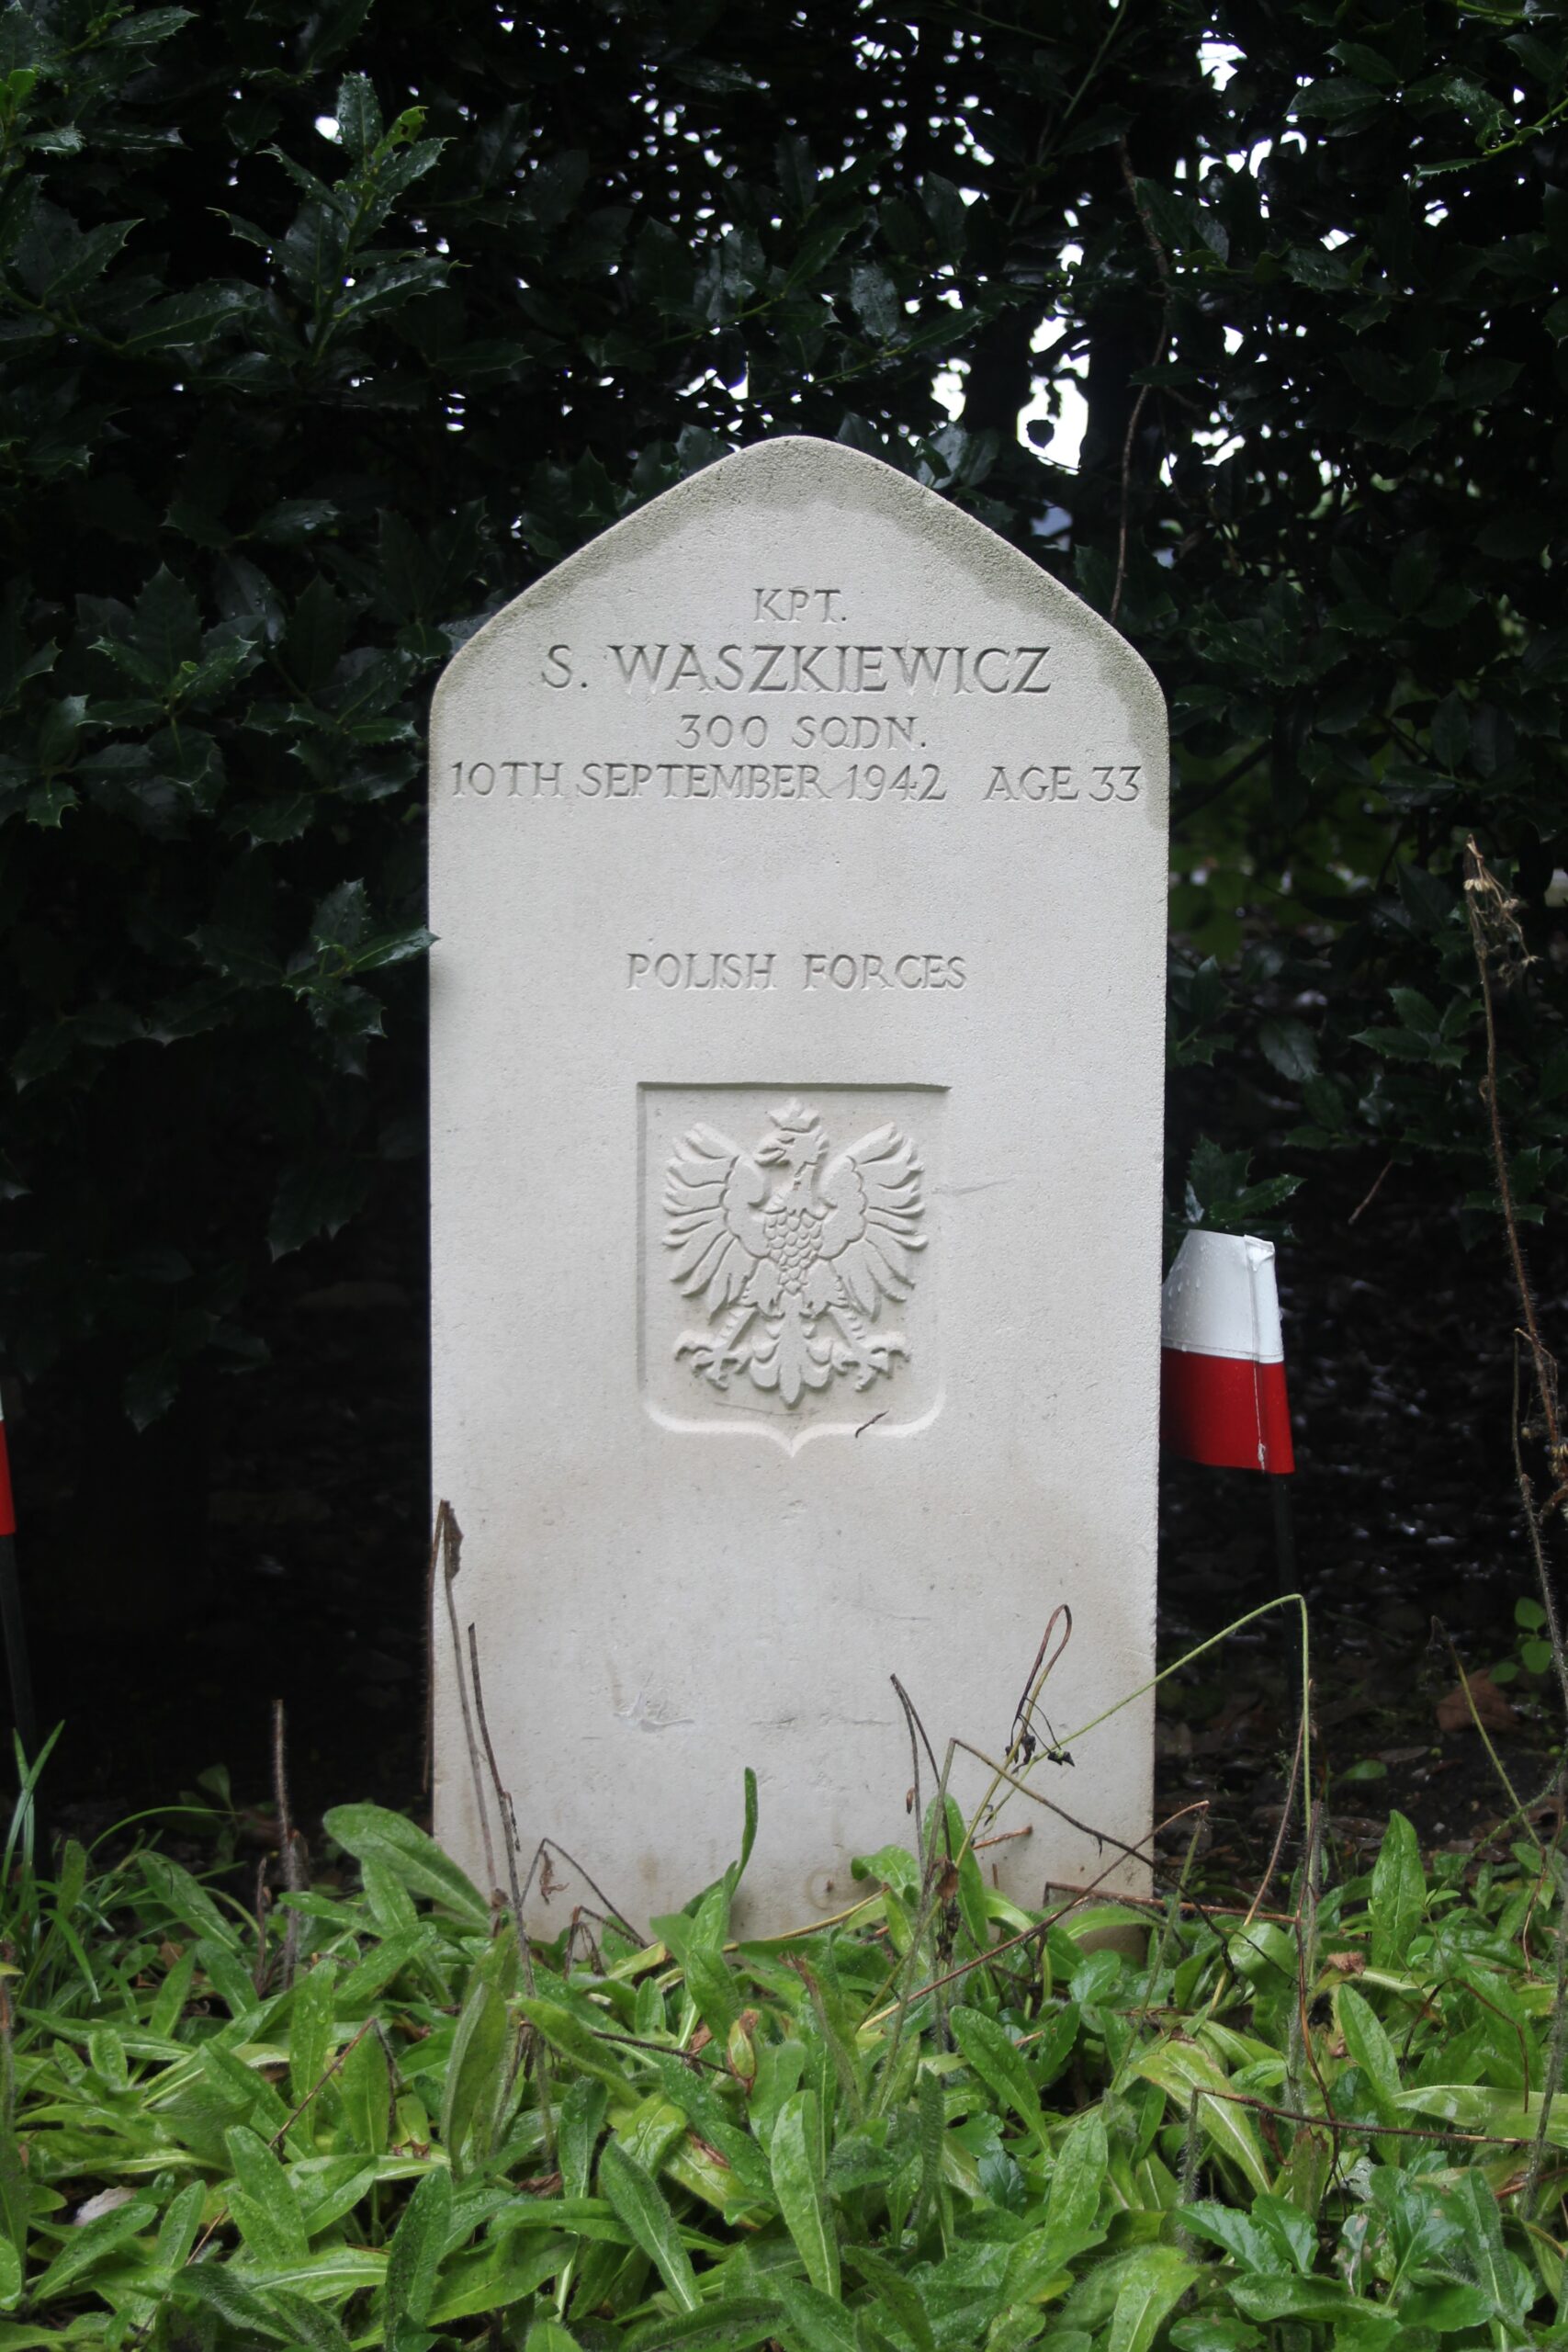 Stanisław Waszkiewicz